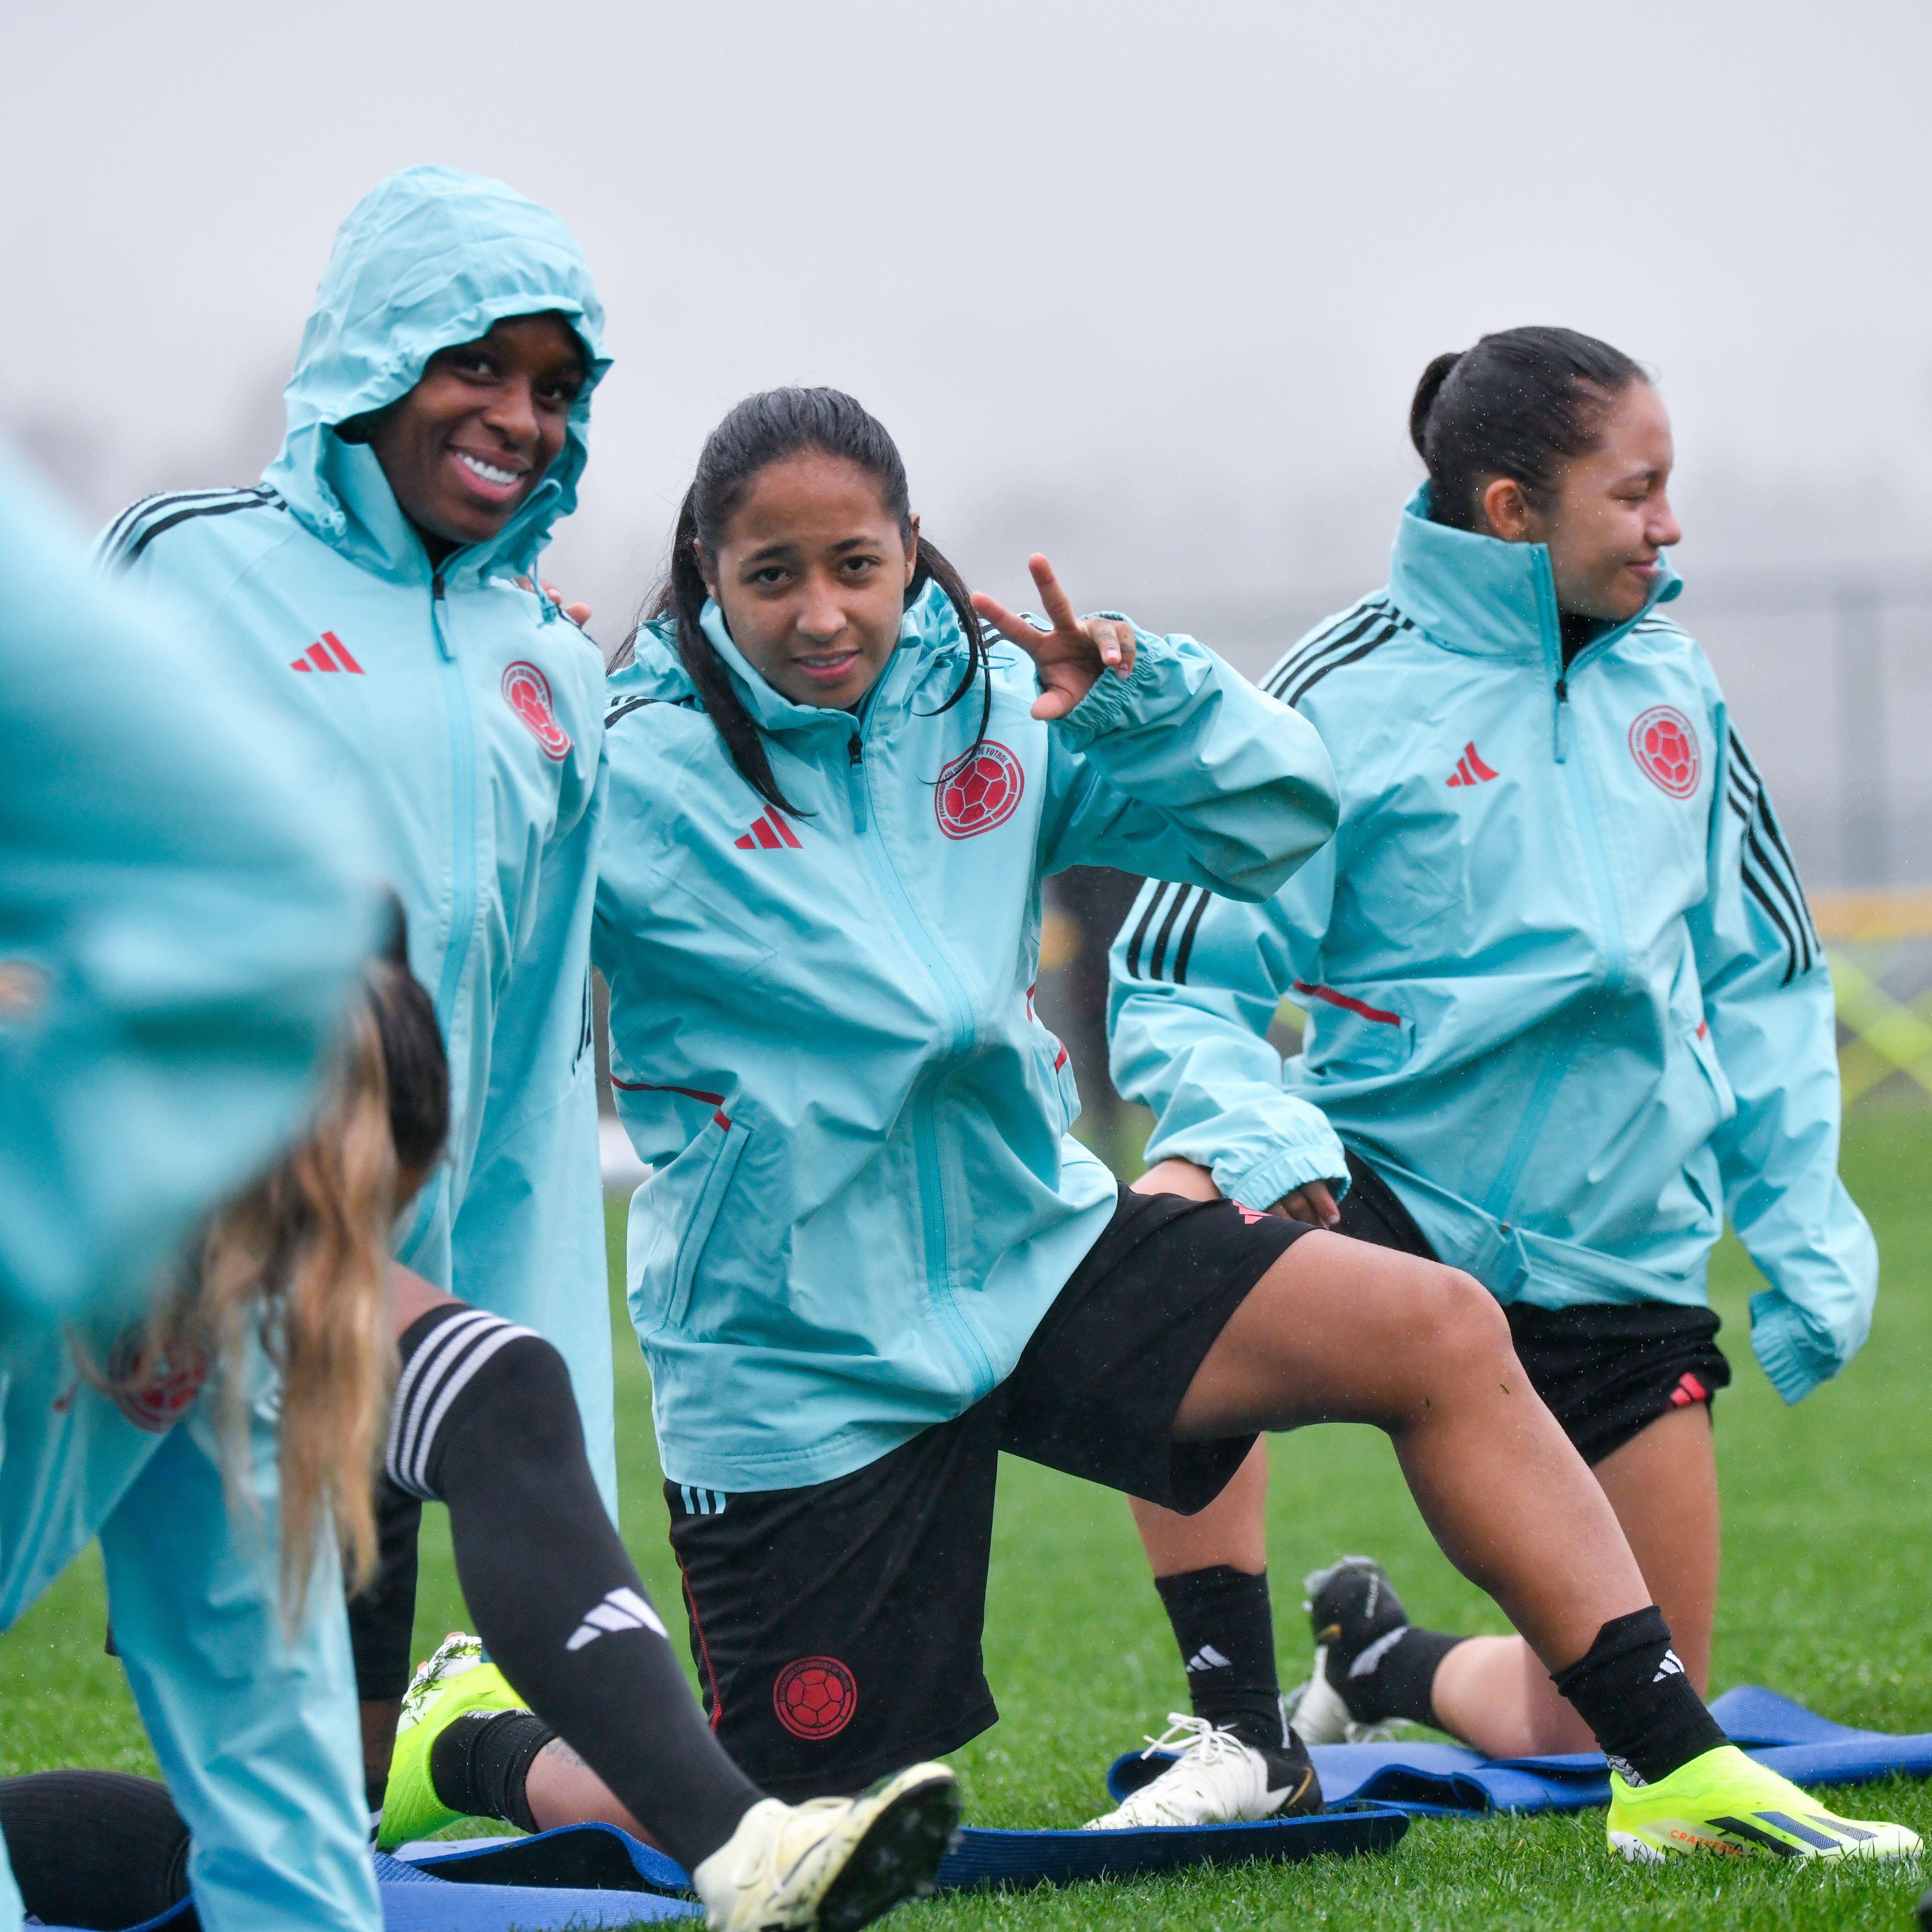 La selección Colombia Femenina arribó a Estados Unidos el domingo 18 de febrero para disputar la Copa Oro Femenina - crédito Federación Colombiana de Fútbol